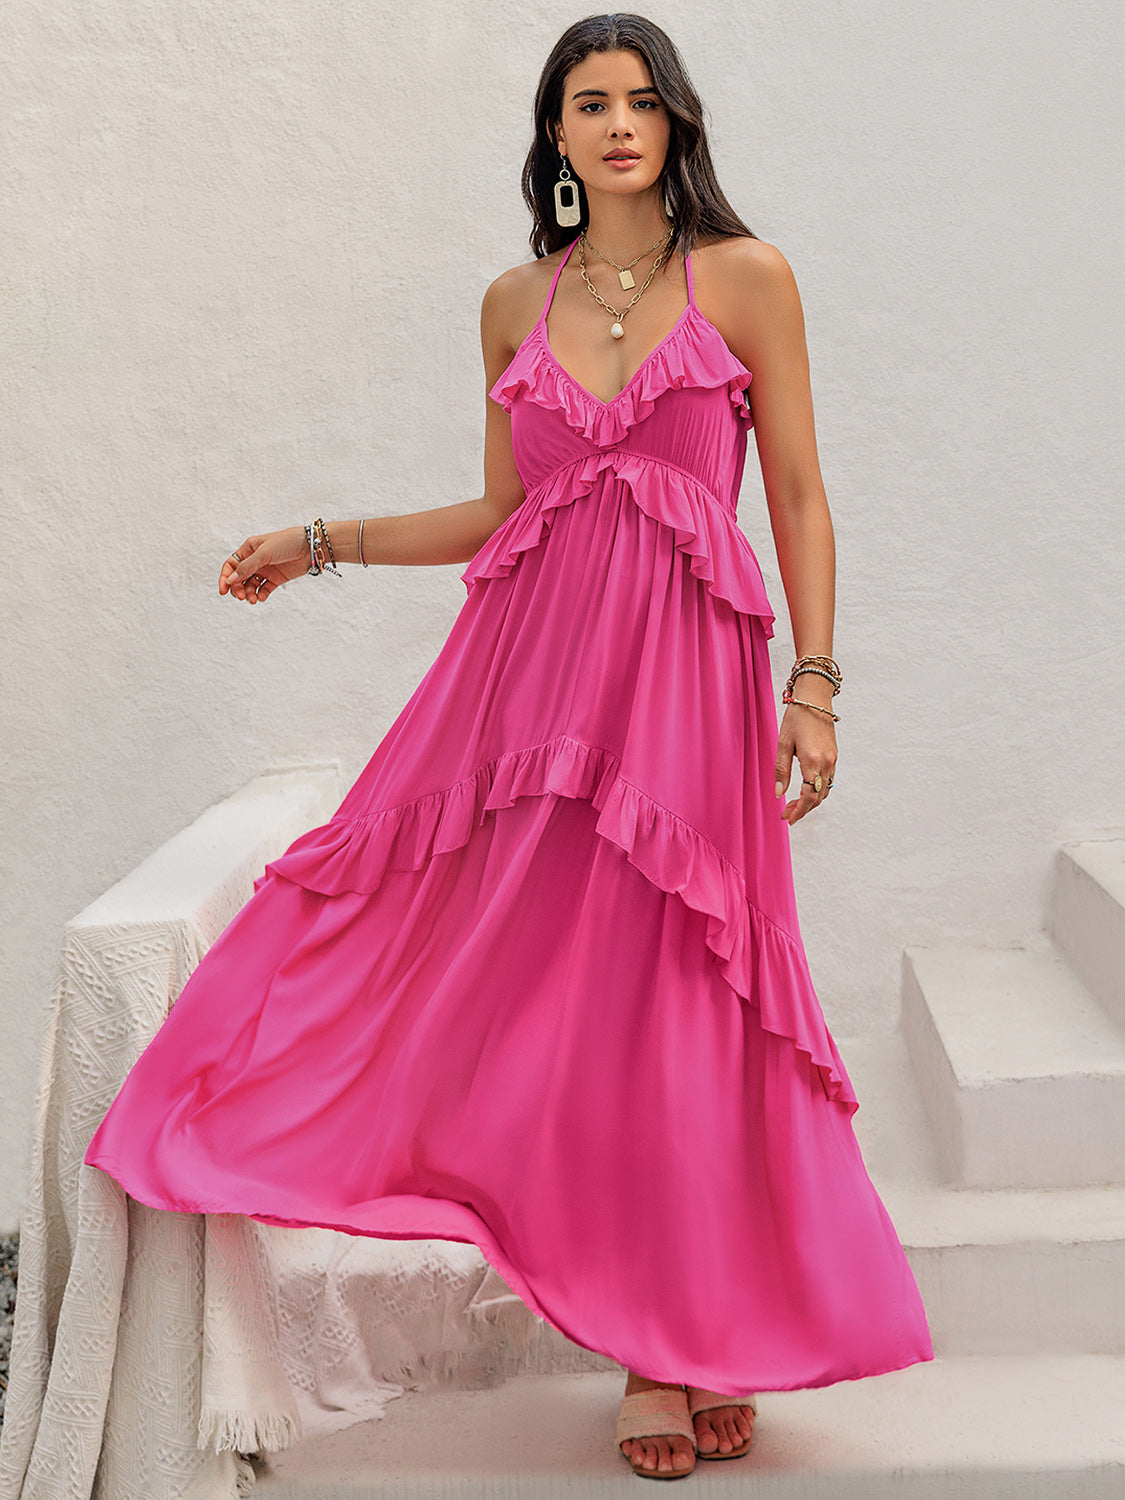 Ruffled Halter Neck Sleeveless Maxi Dress Hot Pink S 